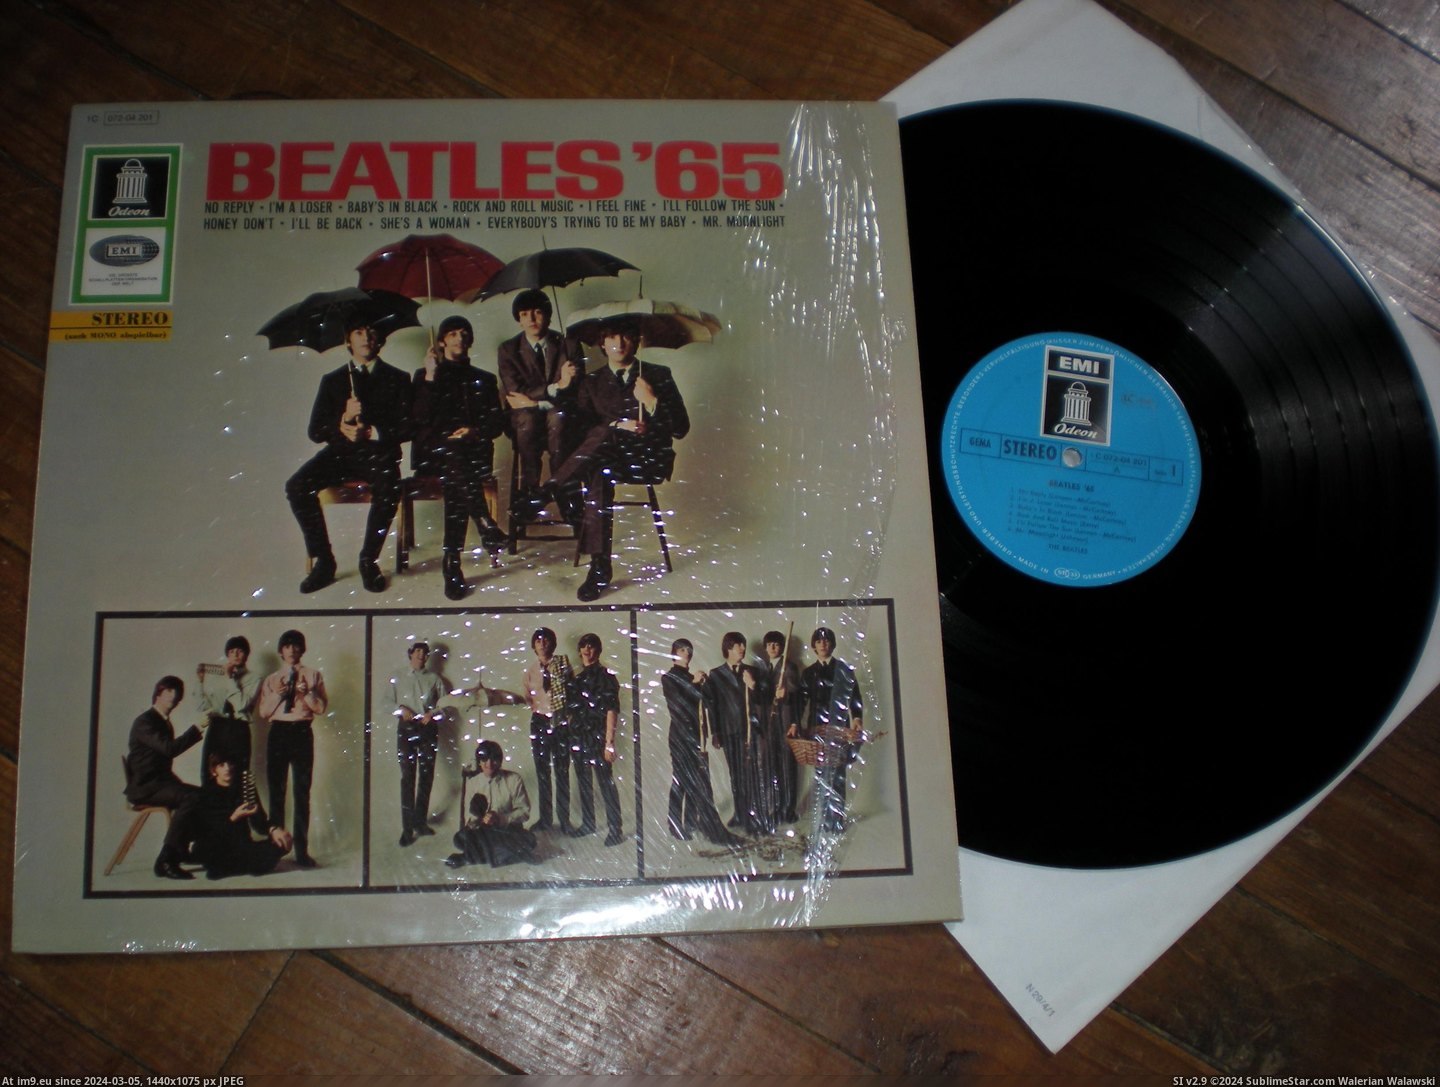  #Beatles  Beatles 65 6 Pic. (Bild von album new 1))